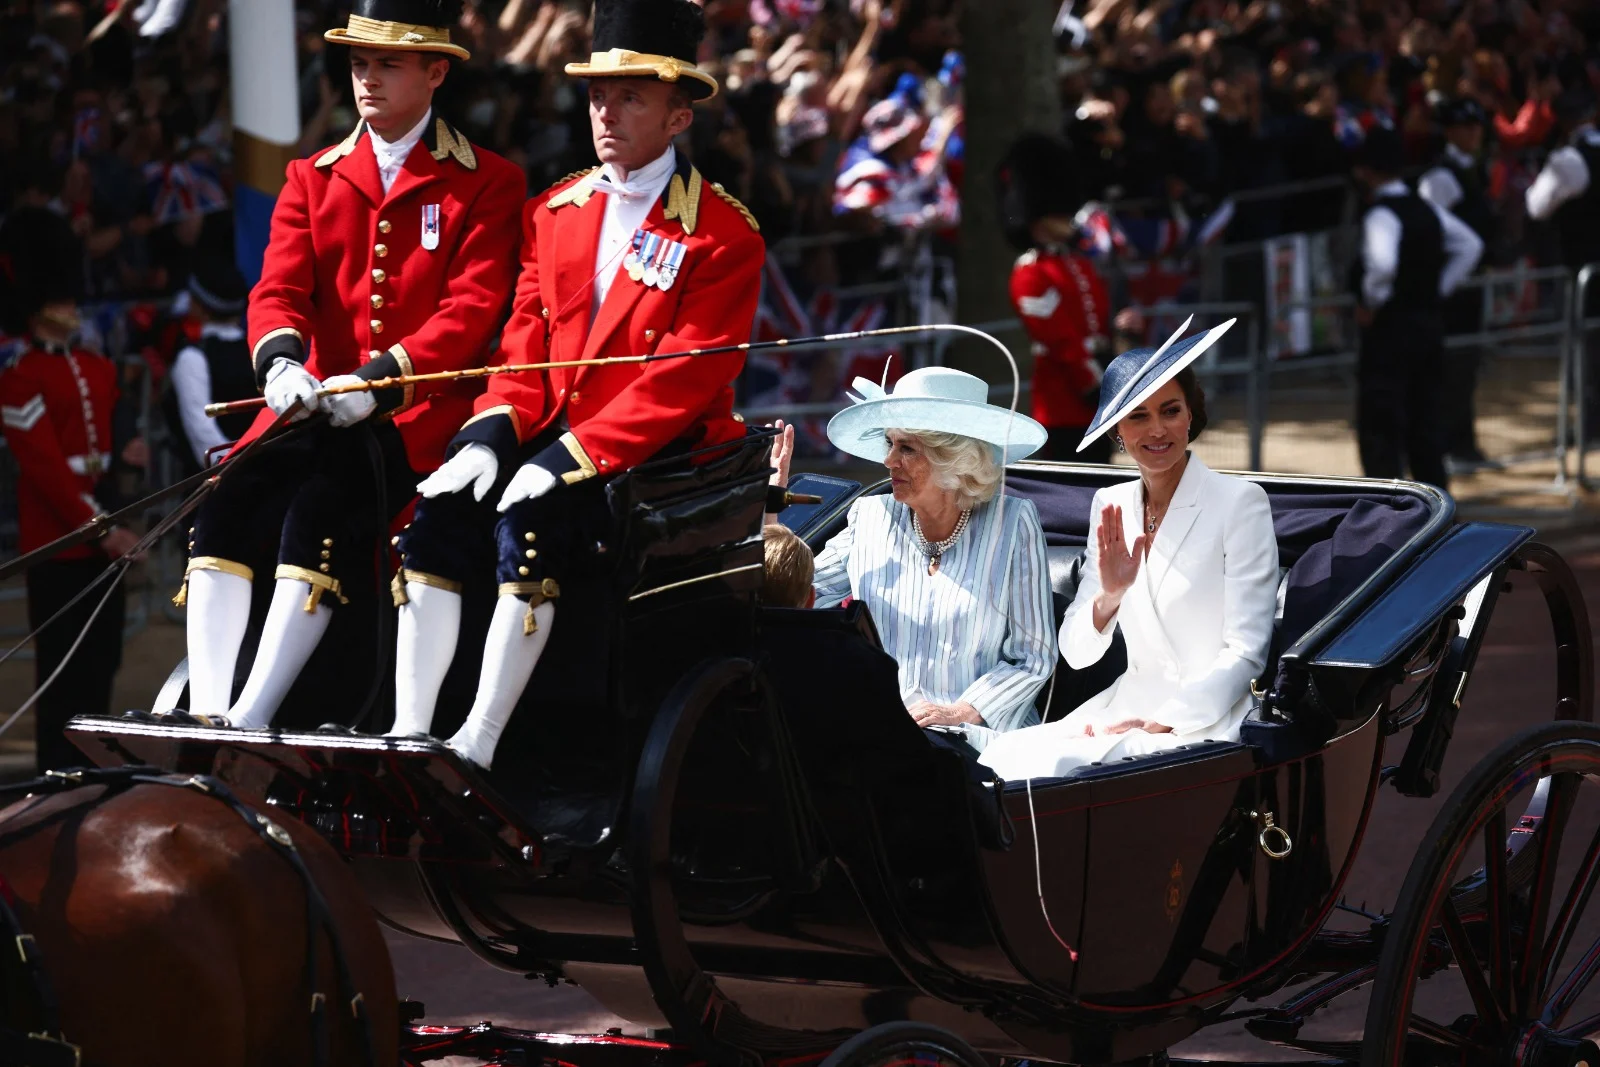 הדוכסית קייט והדוכסית קמילה עושות את דרכן בכרכרה במצעד